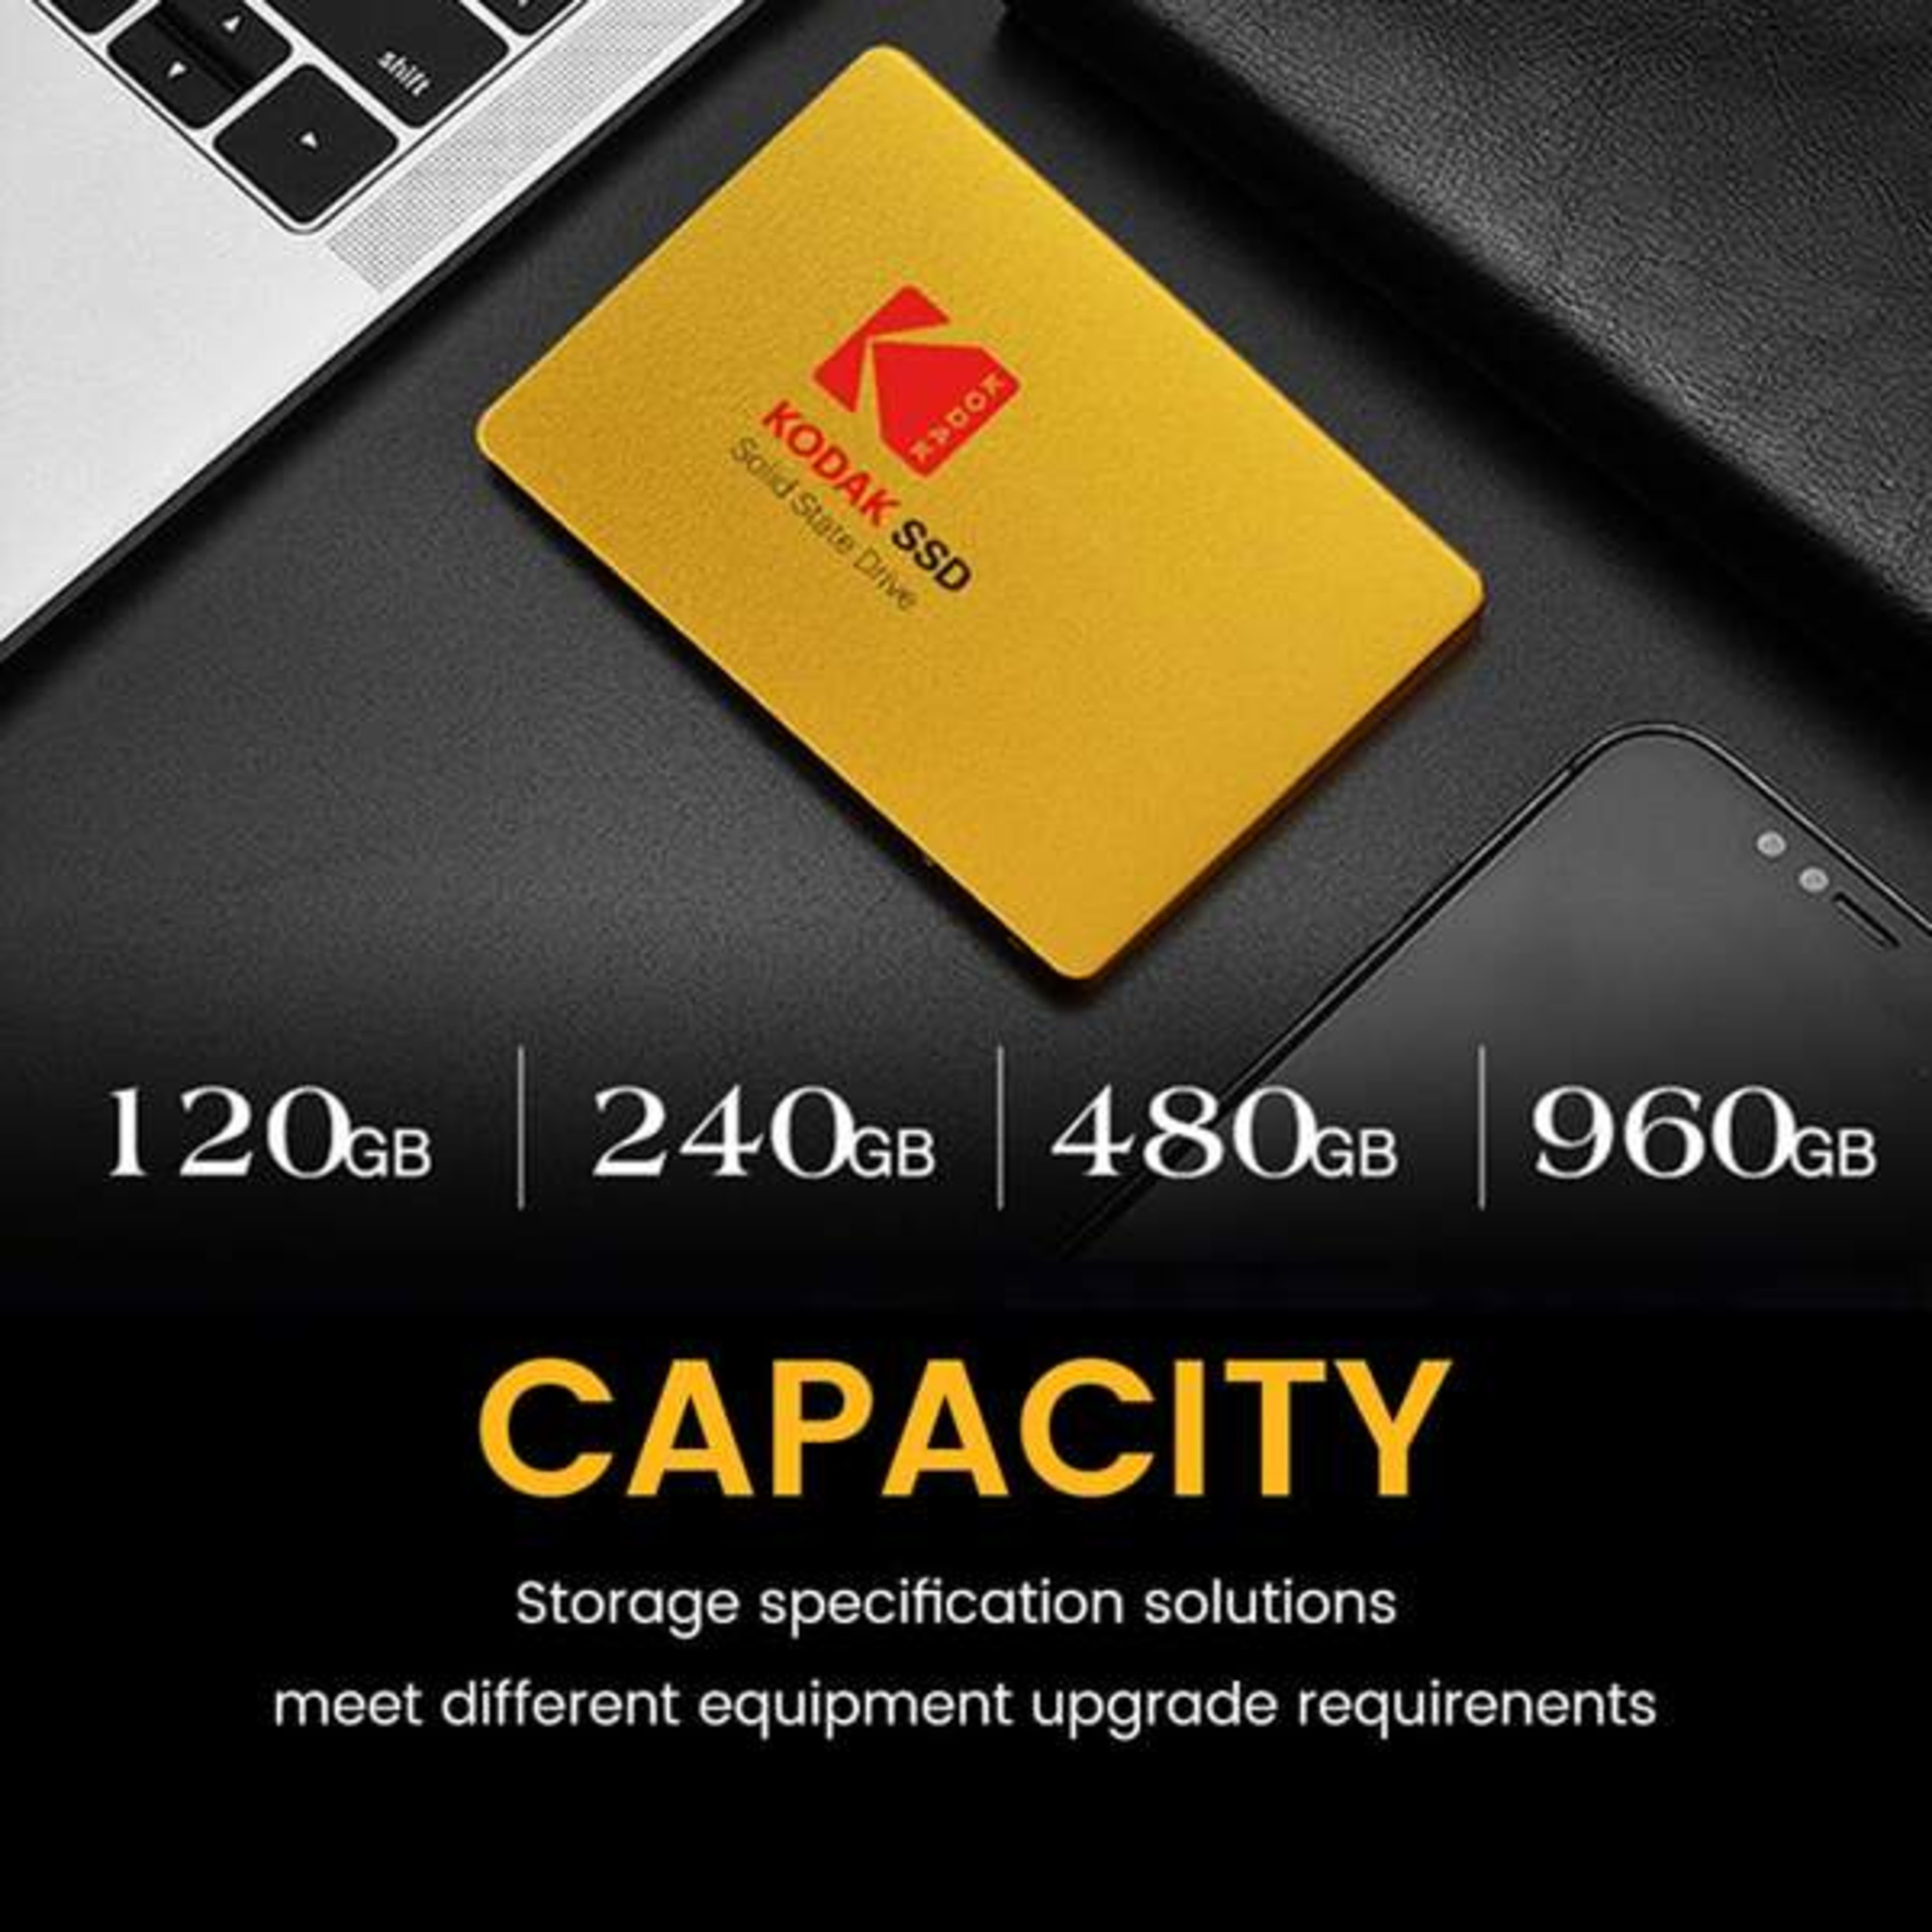 KODAK SSD X100 2.5 INCH SATA3 480GB Gold Disk HDD SATA III